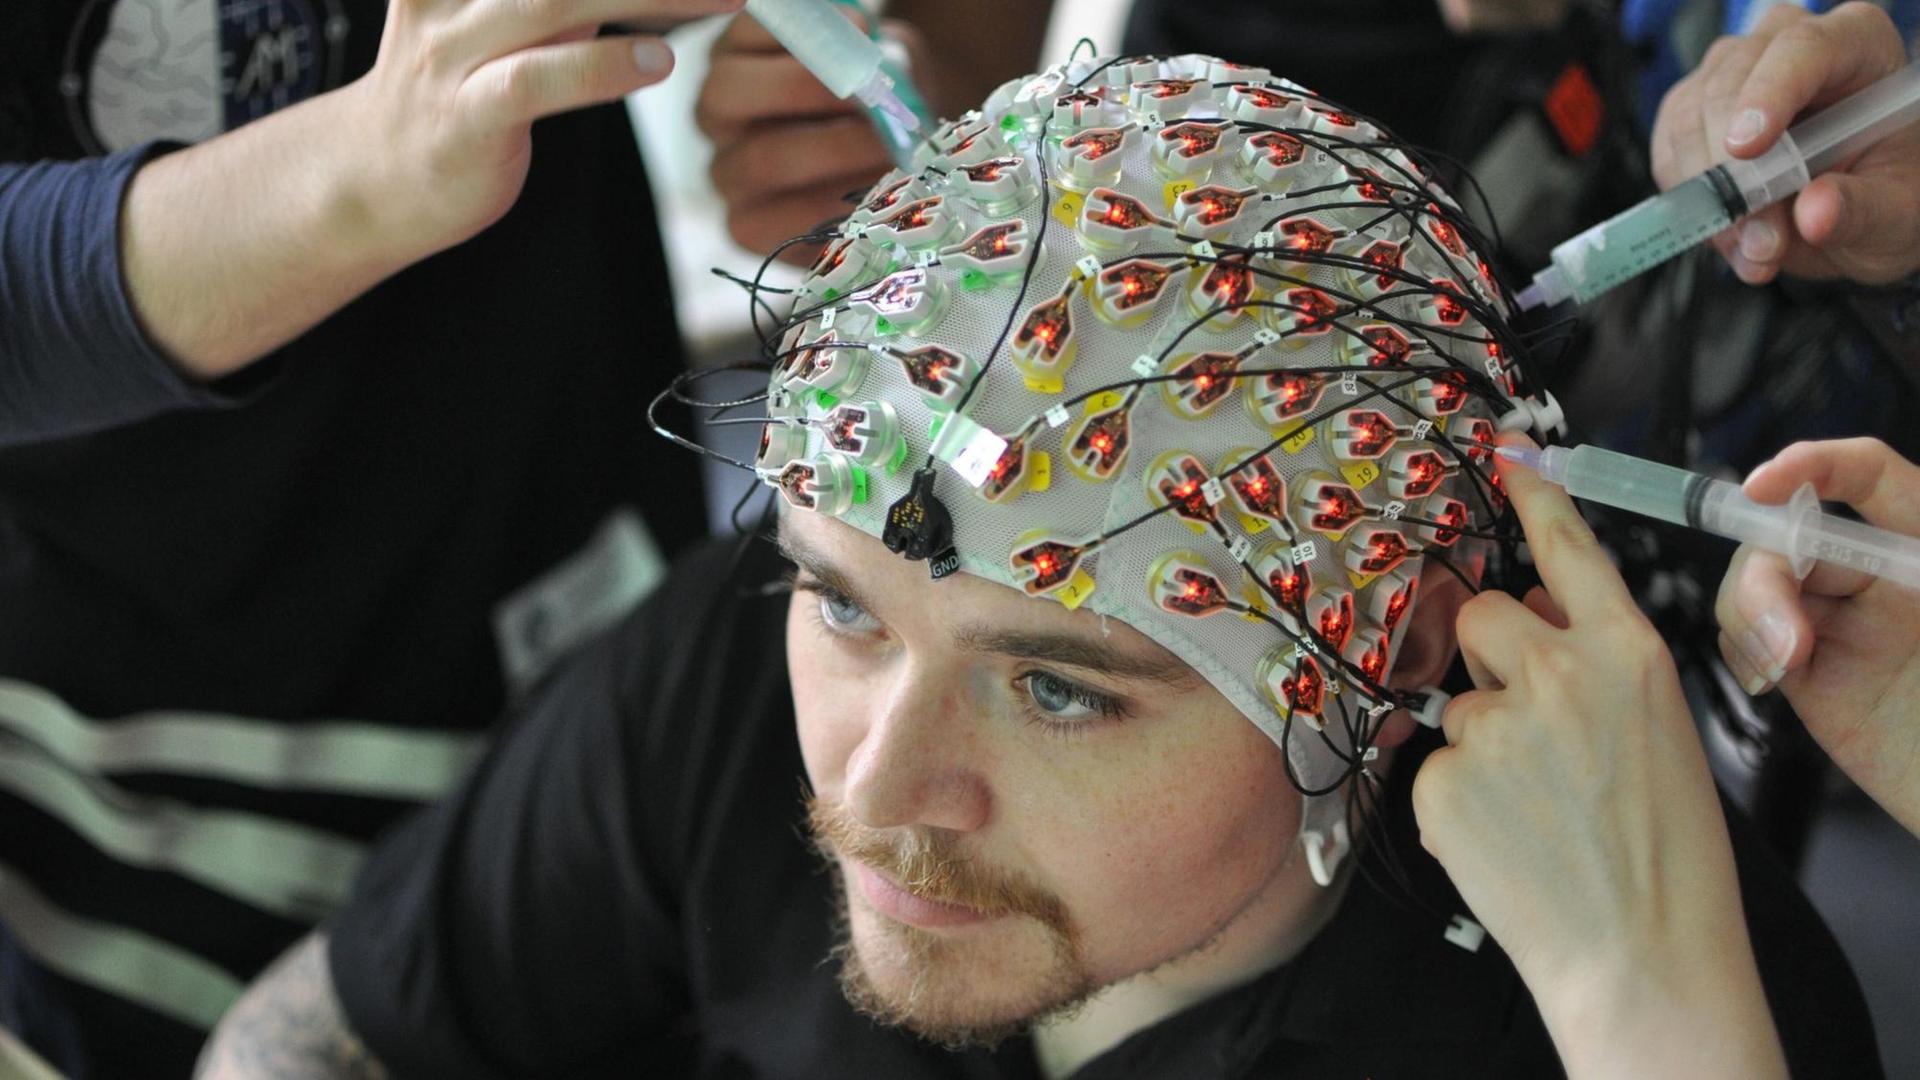 Ein Mann bekommt Elektroden an den Kopf gebracht